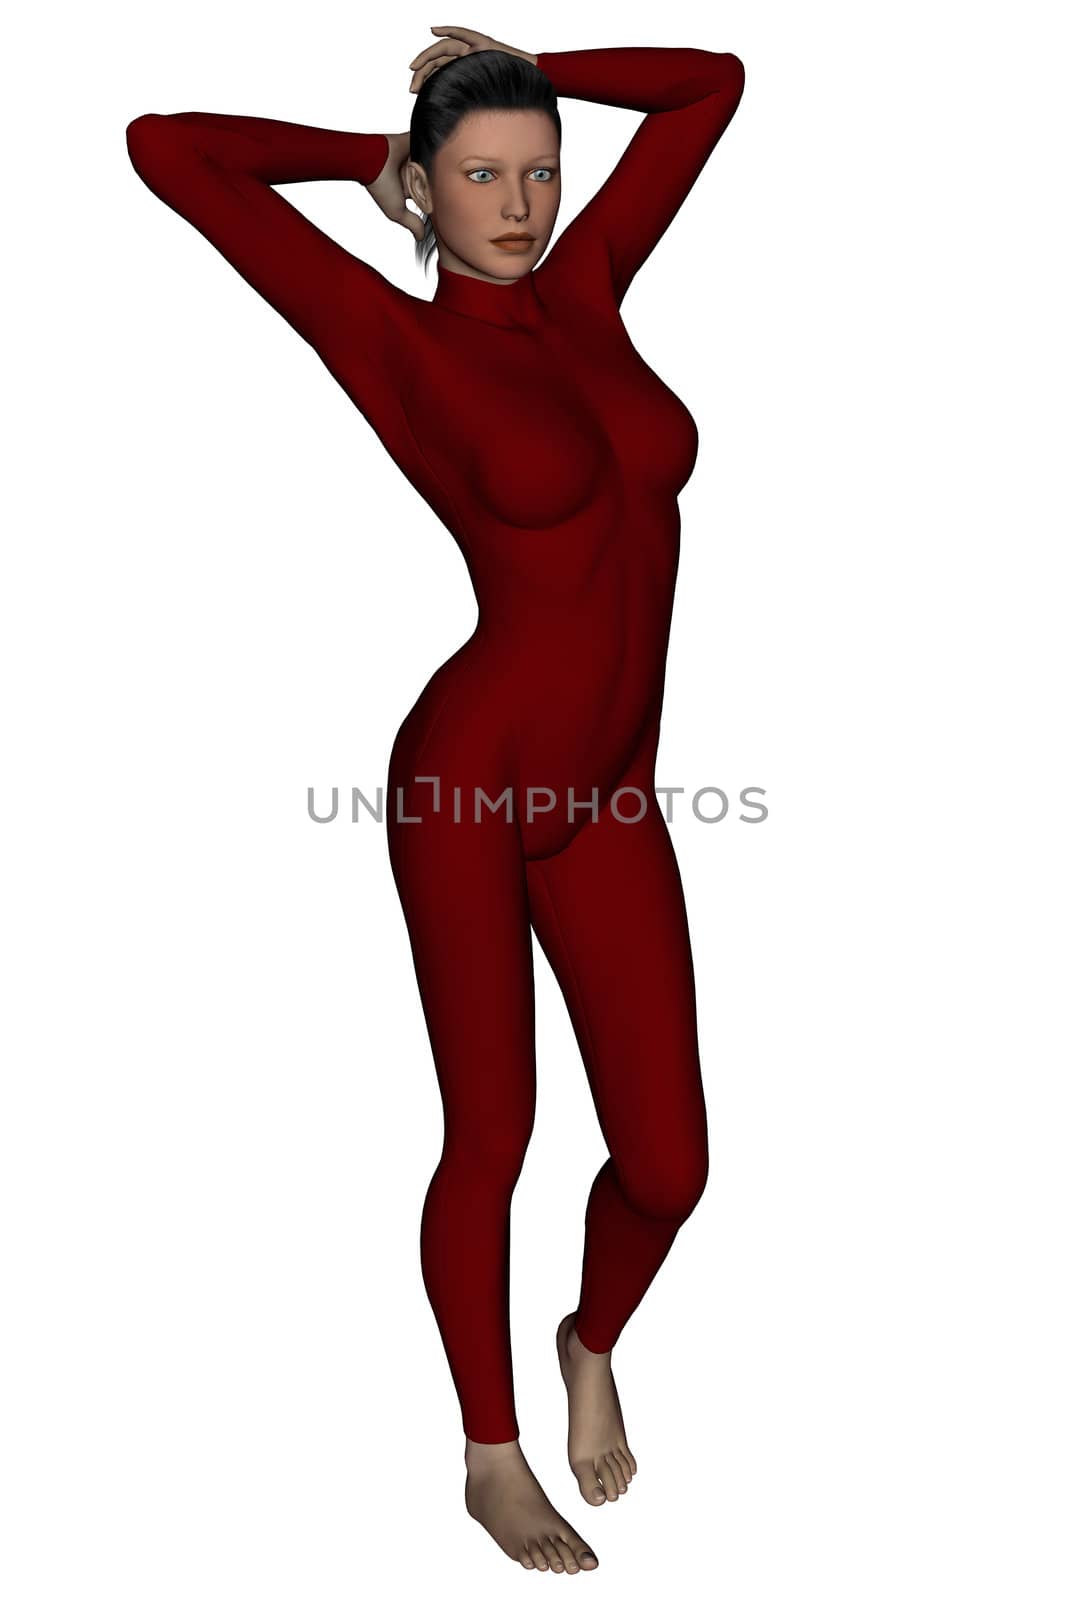 Pretty woman in bodysuit by Wampa